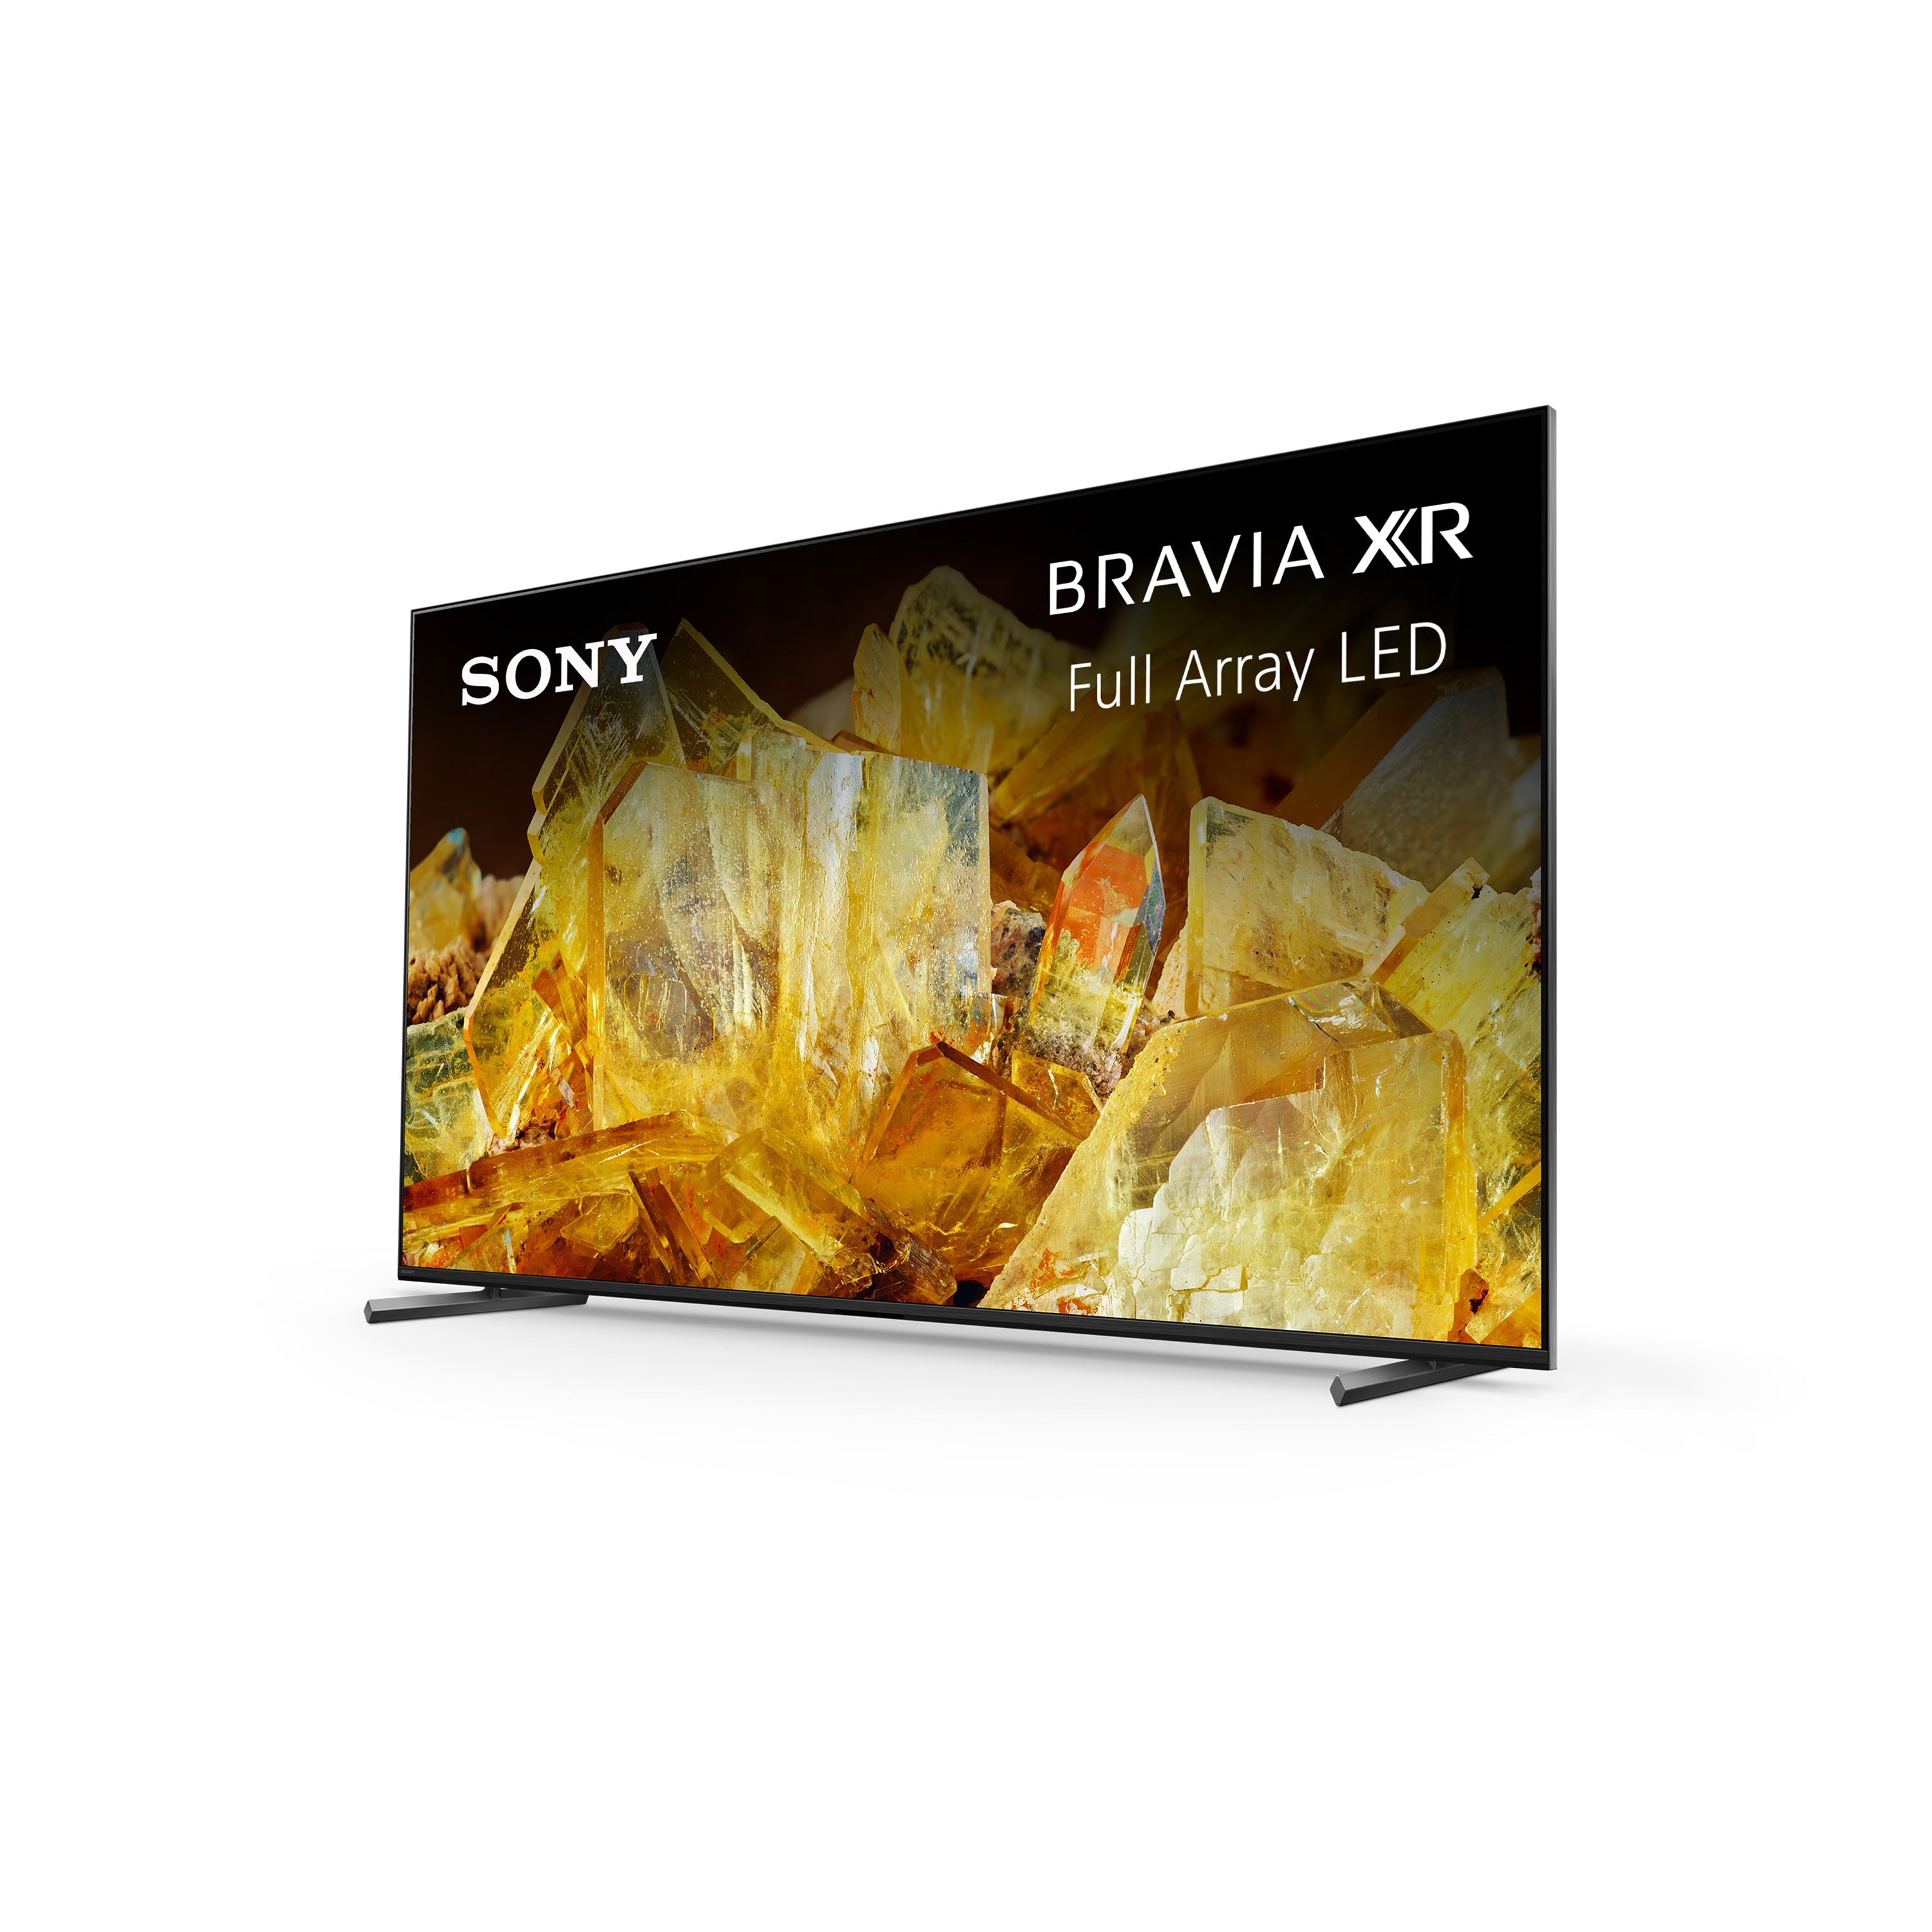 Sony X90L BRAVIA XR | Full Array LED | 4K HDR TV | Smart TV (Google TV)